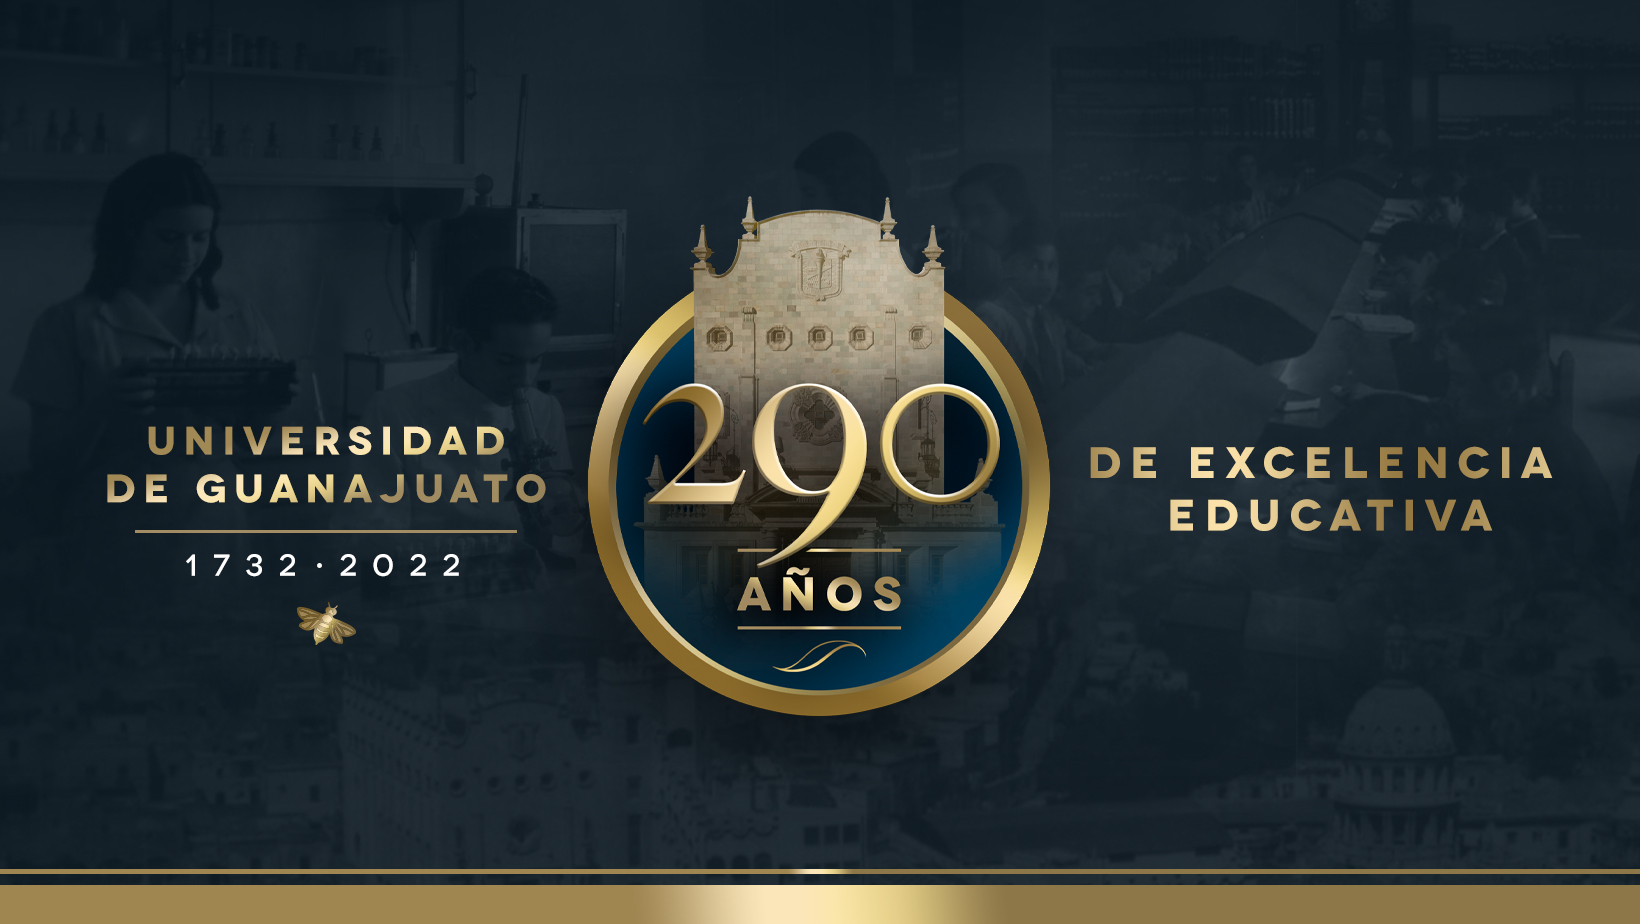 Universidad de Guanajuato: 290 años de excelencia educativa